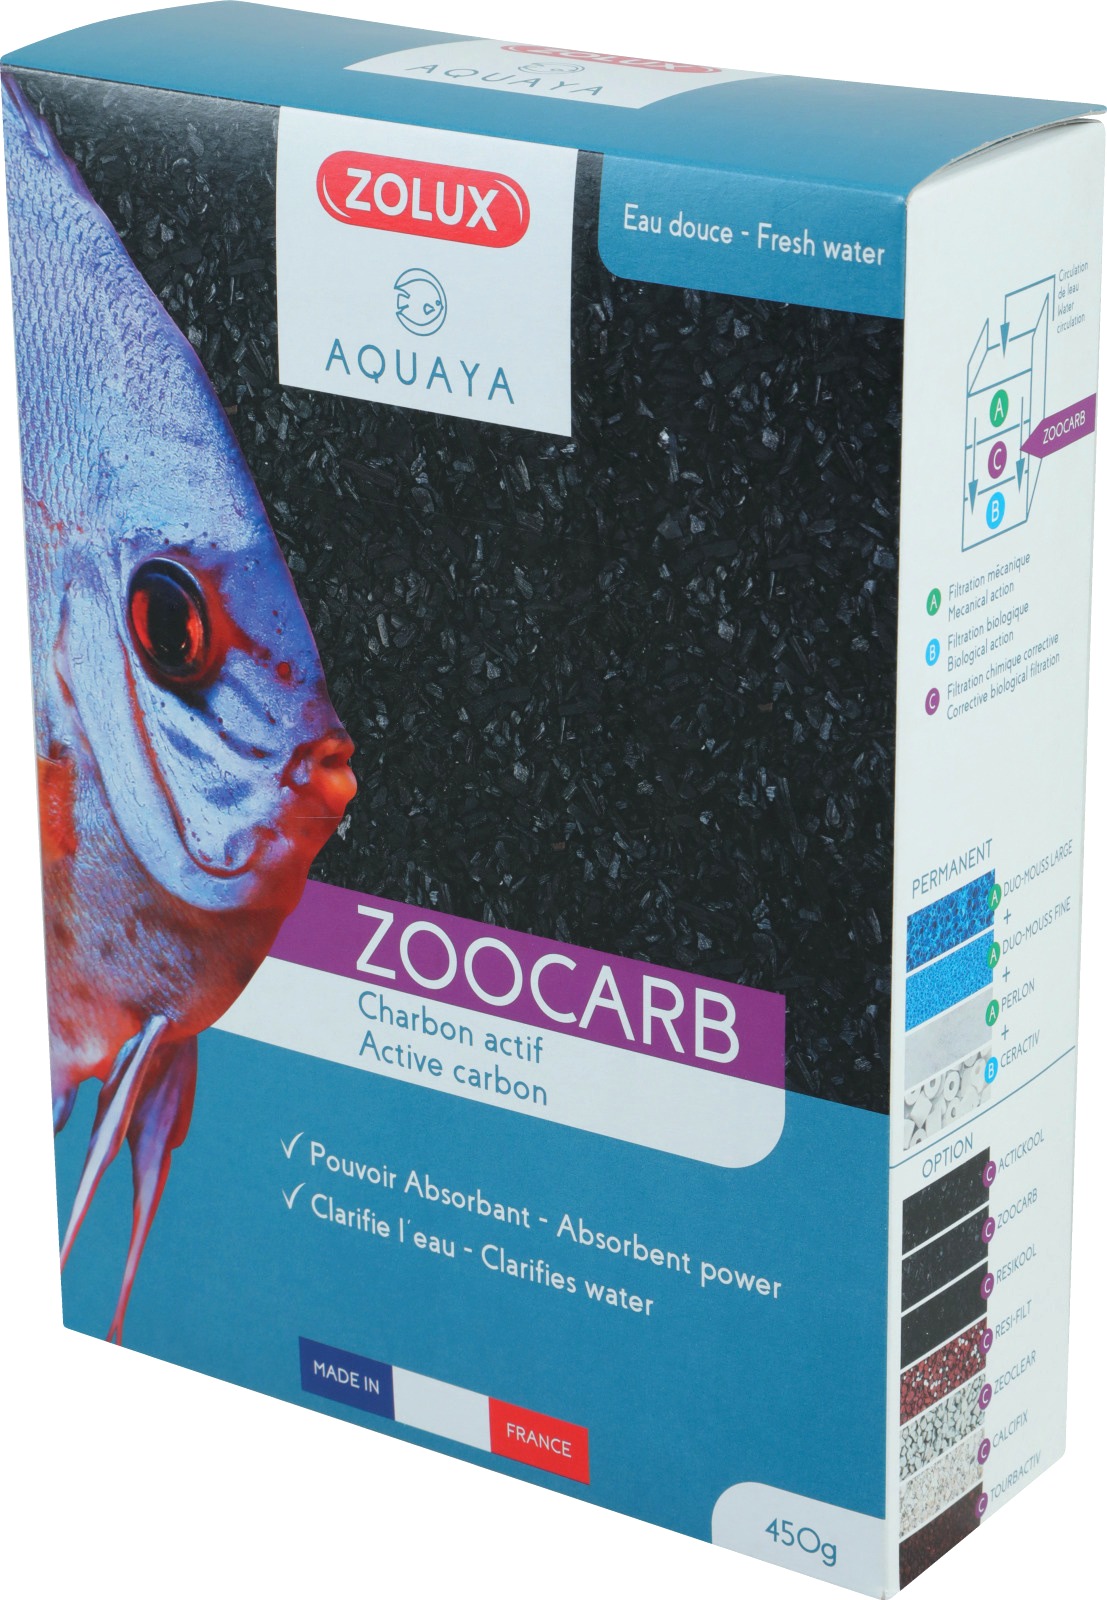 zolux-zoocarb-2-1-8-l-charbon-de-filtration-pour-absorber-les-substances-polluantes-de-l-eau